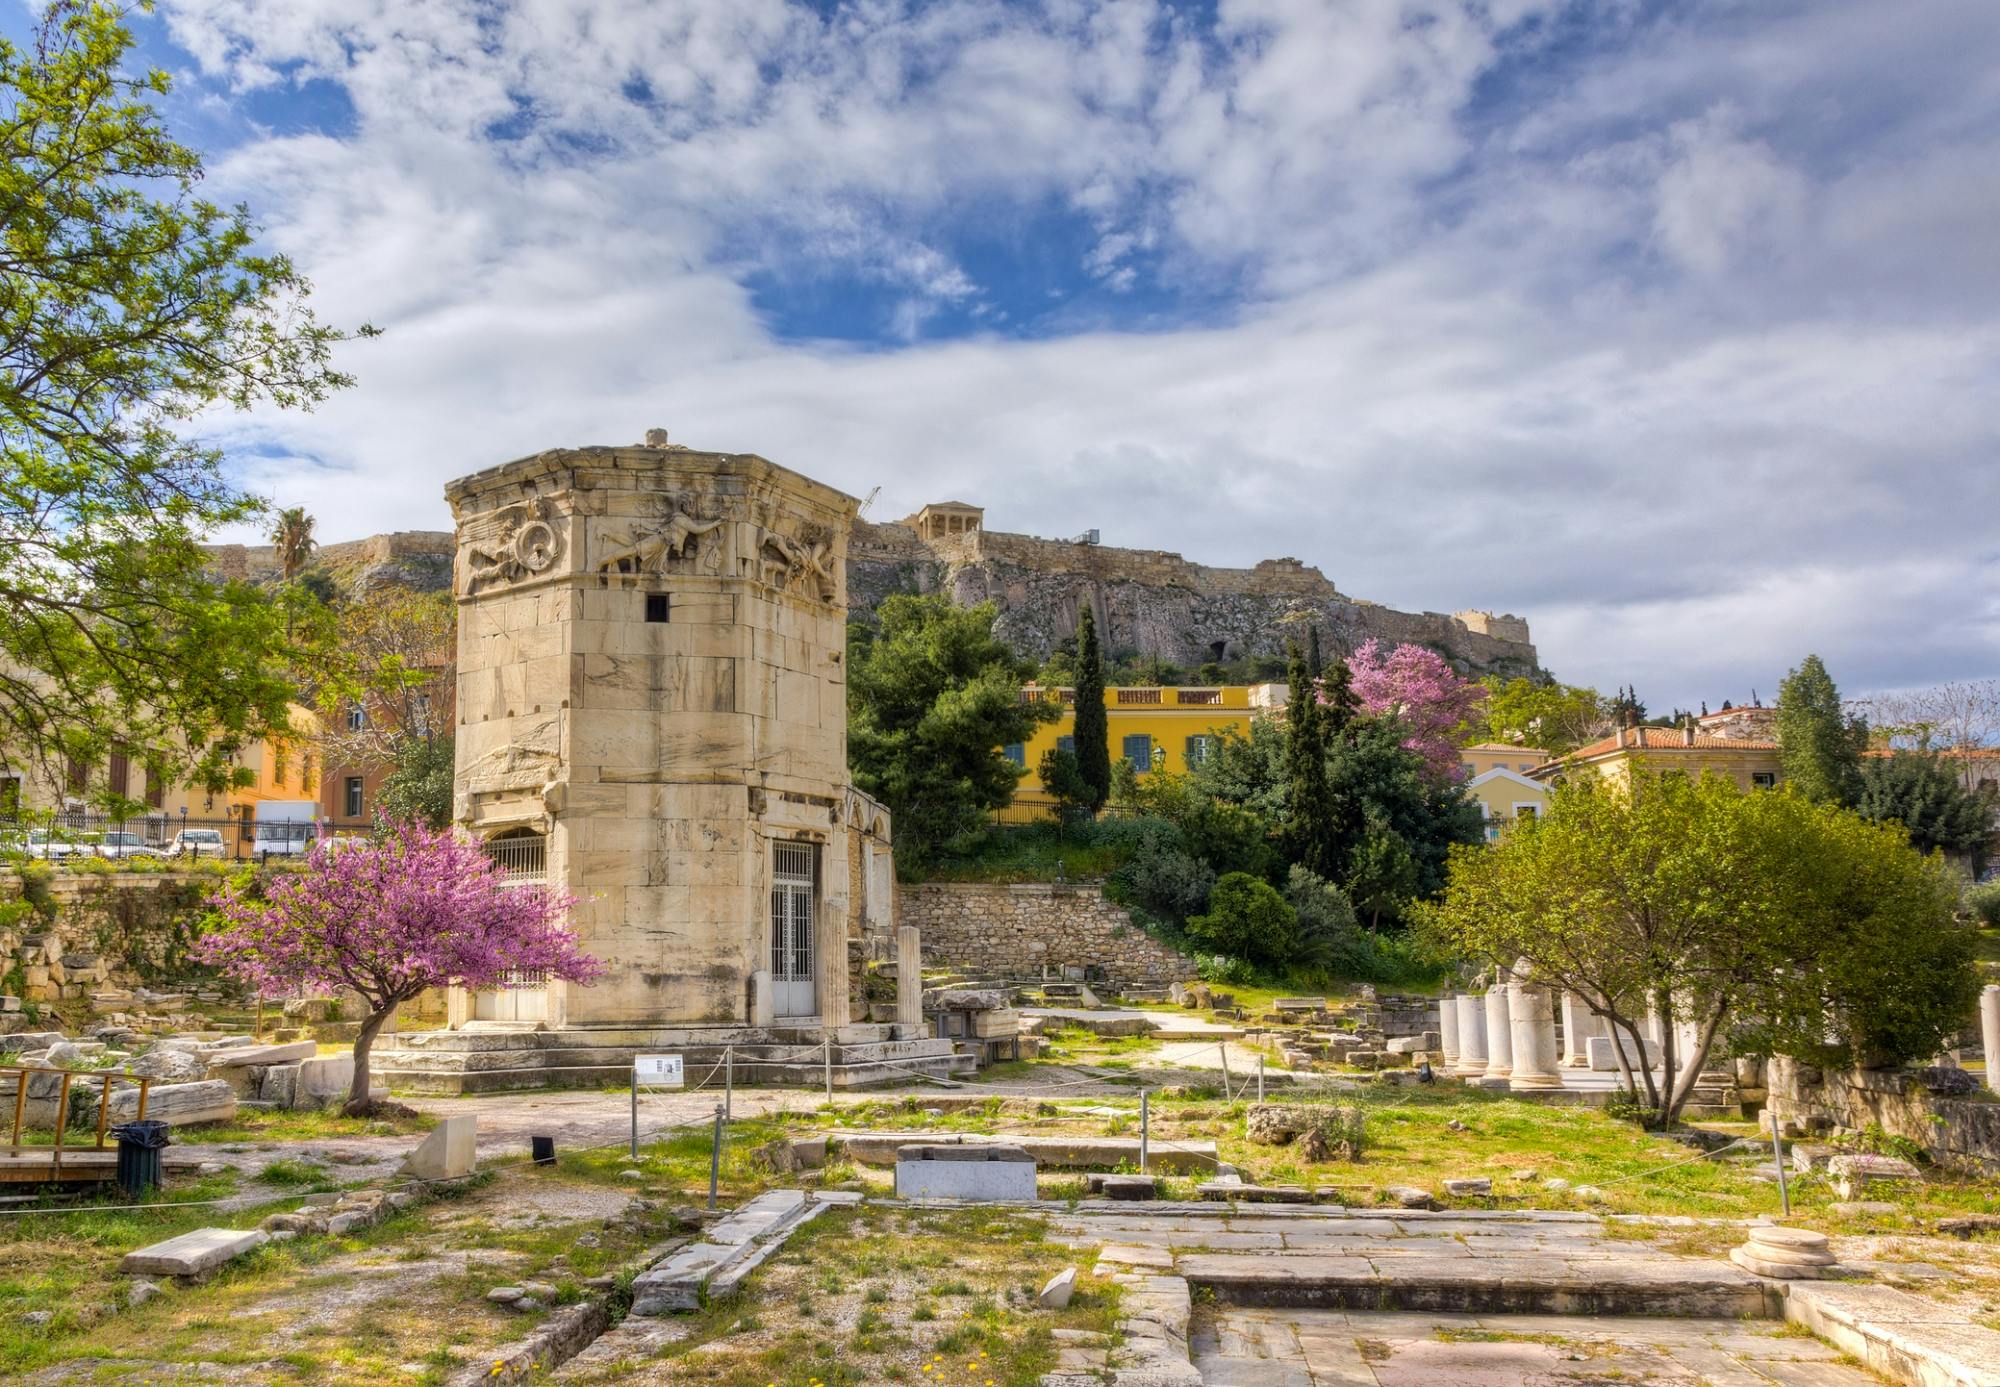 Bilet elektroniczny Roman Agora i wycieczka audio z przewodnikiem po Atenach